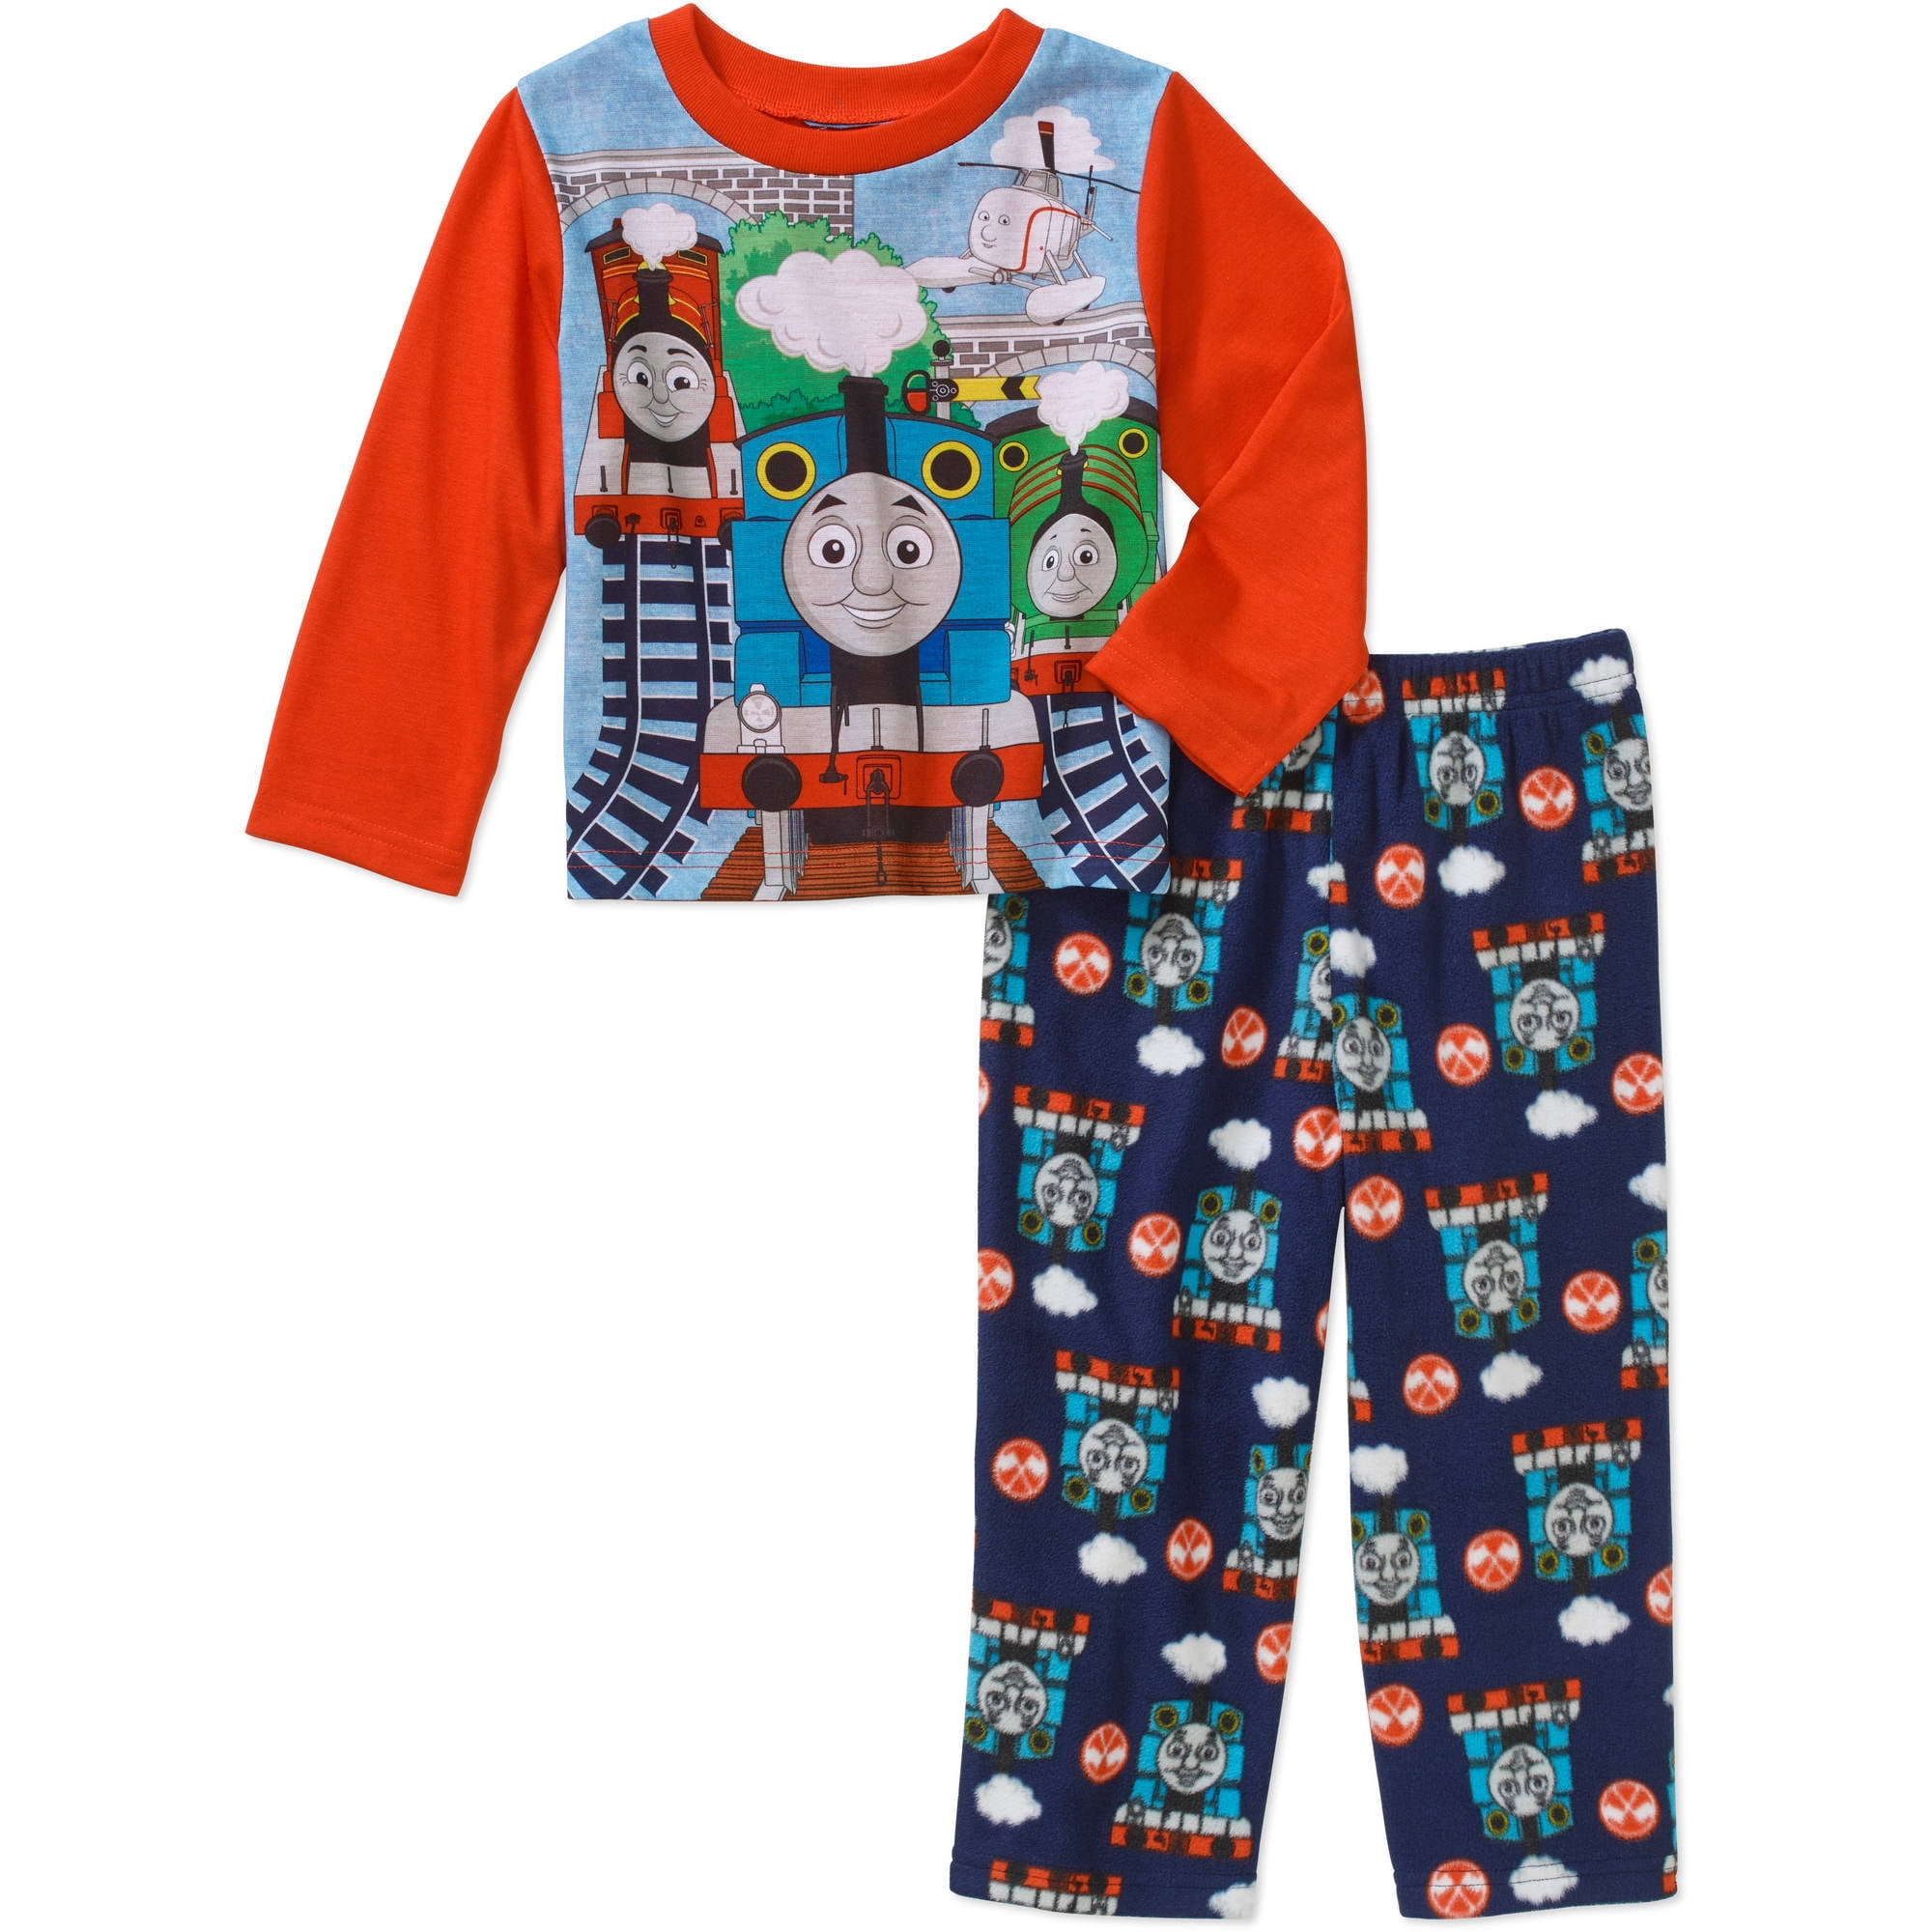 Thomas the Train toddler boys pajamas size 5T 